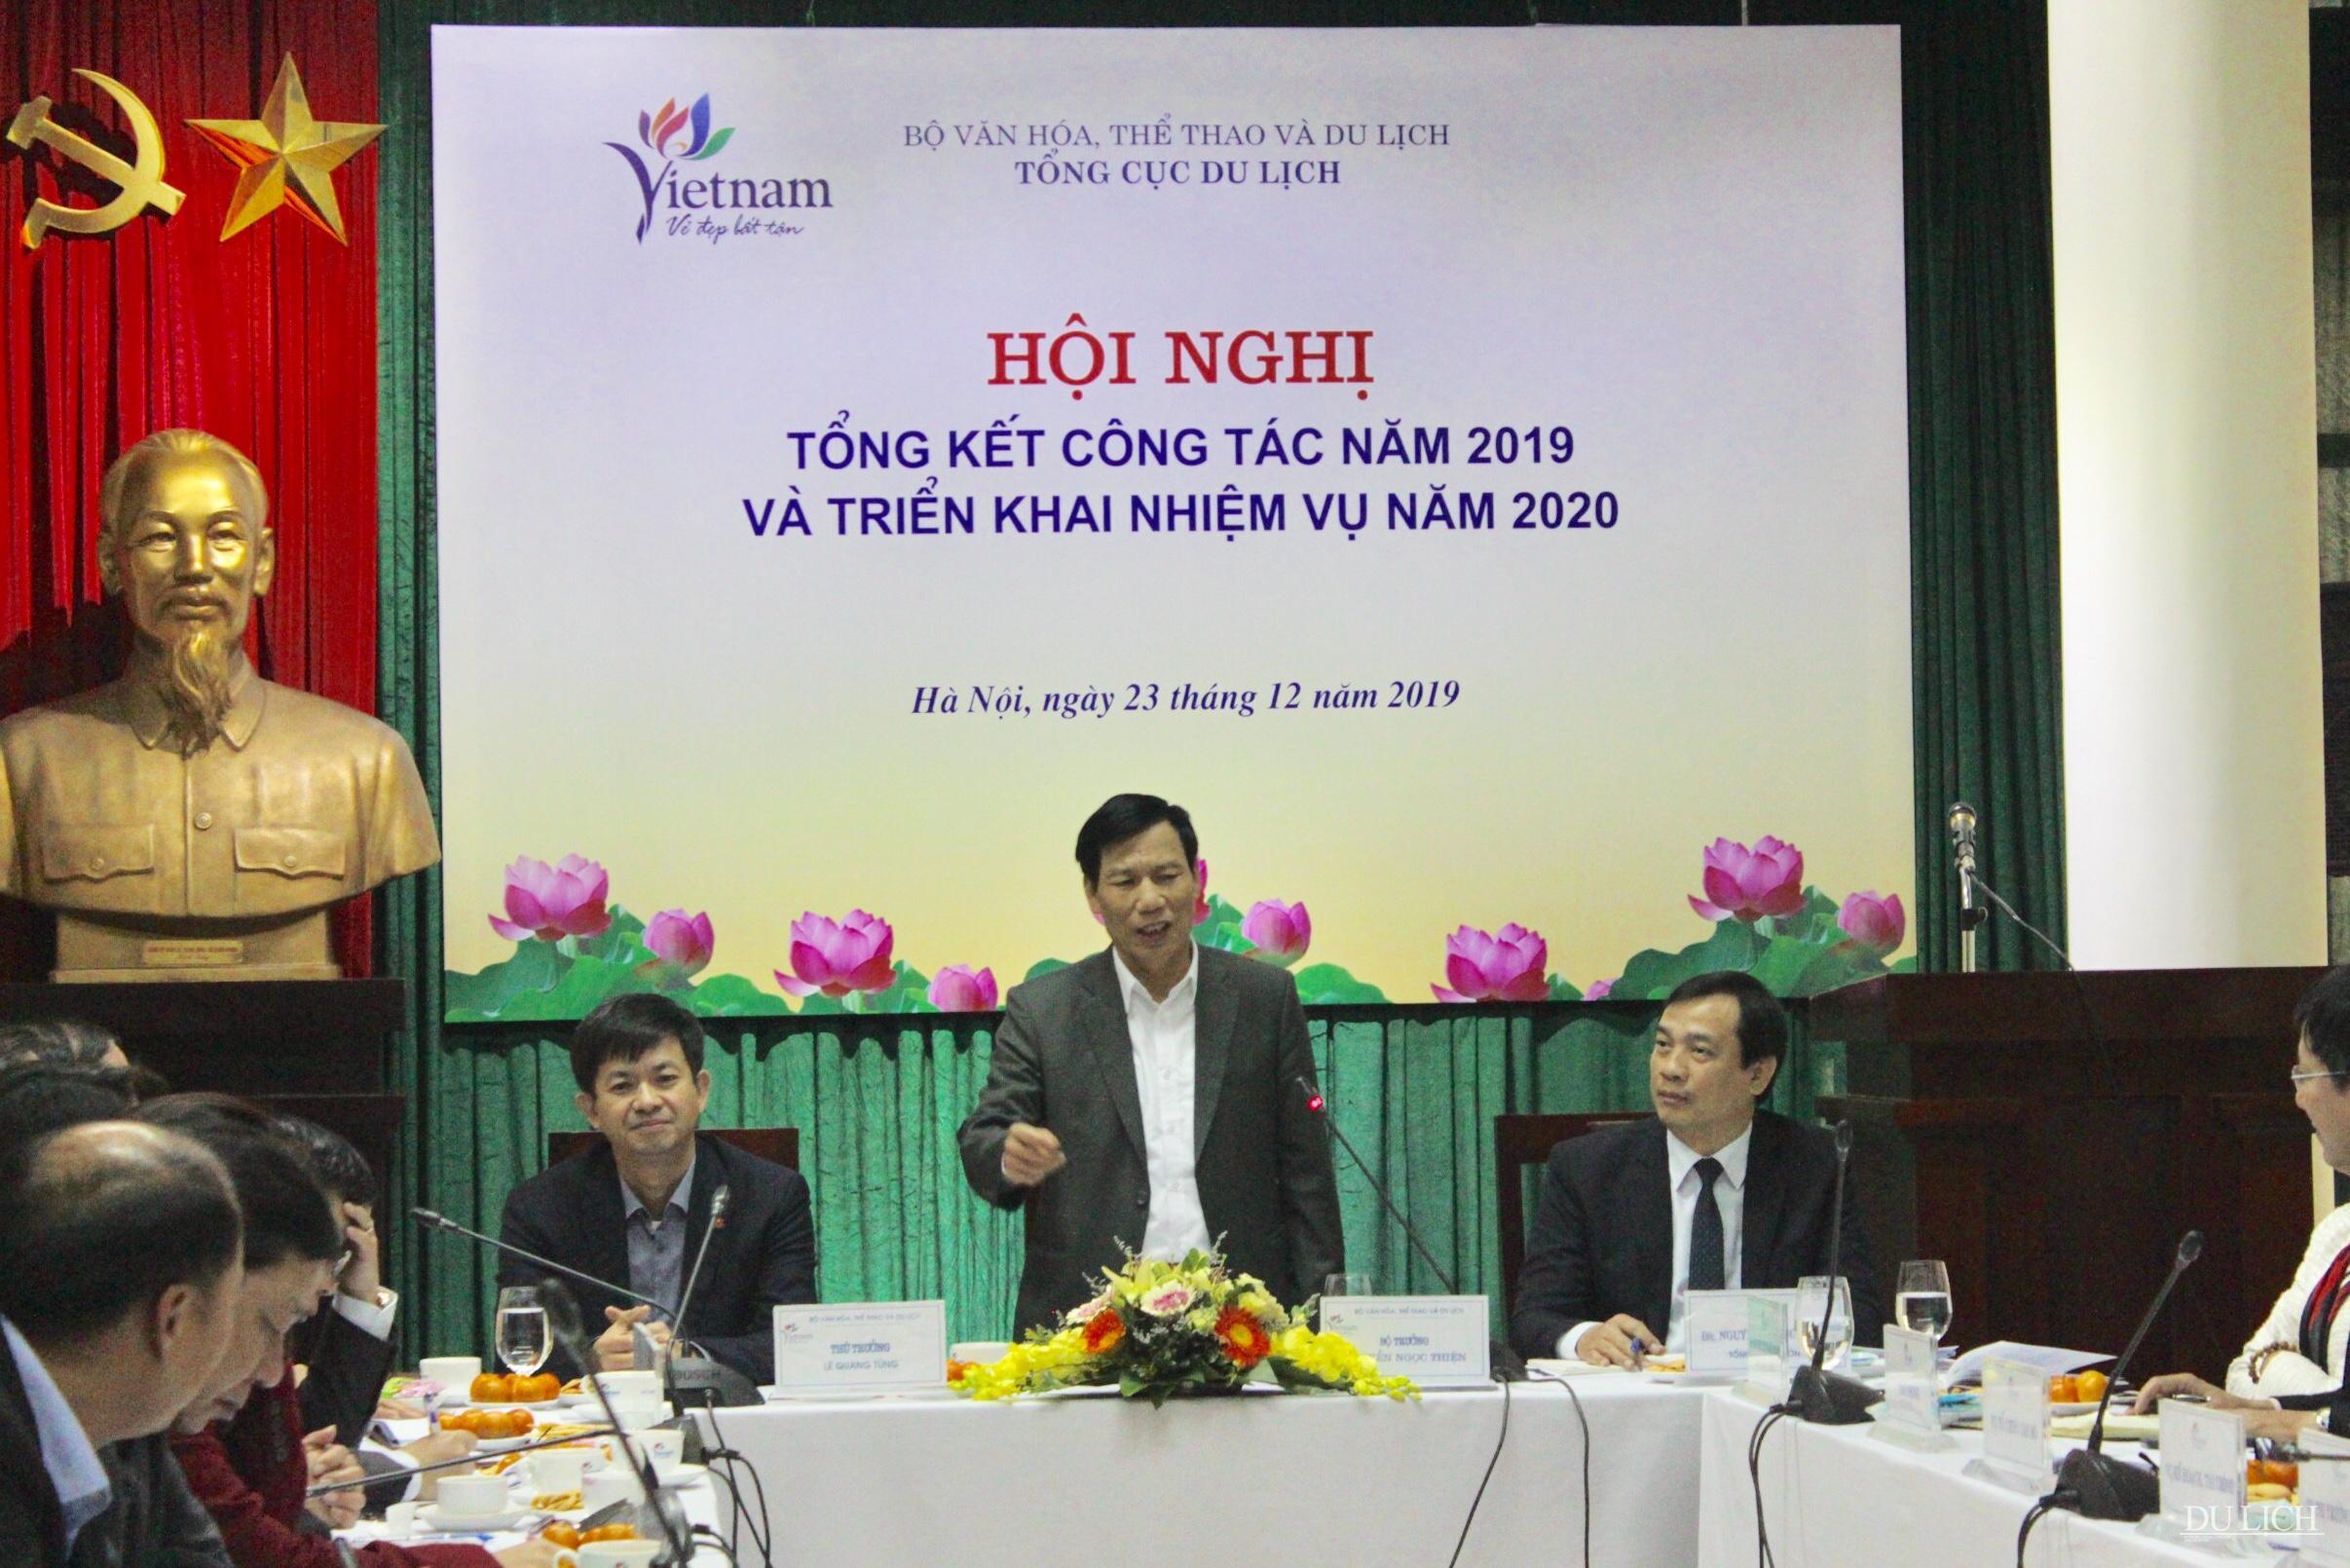 Bộ trưởng Bộ VHTTDL Nguyễn Ngọc Thiện chỉ đạo hội nghị